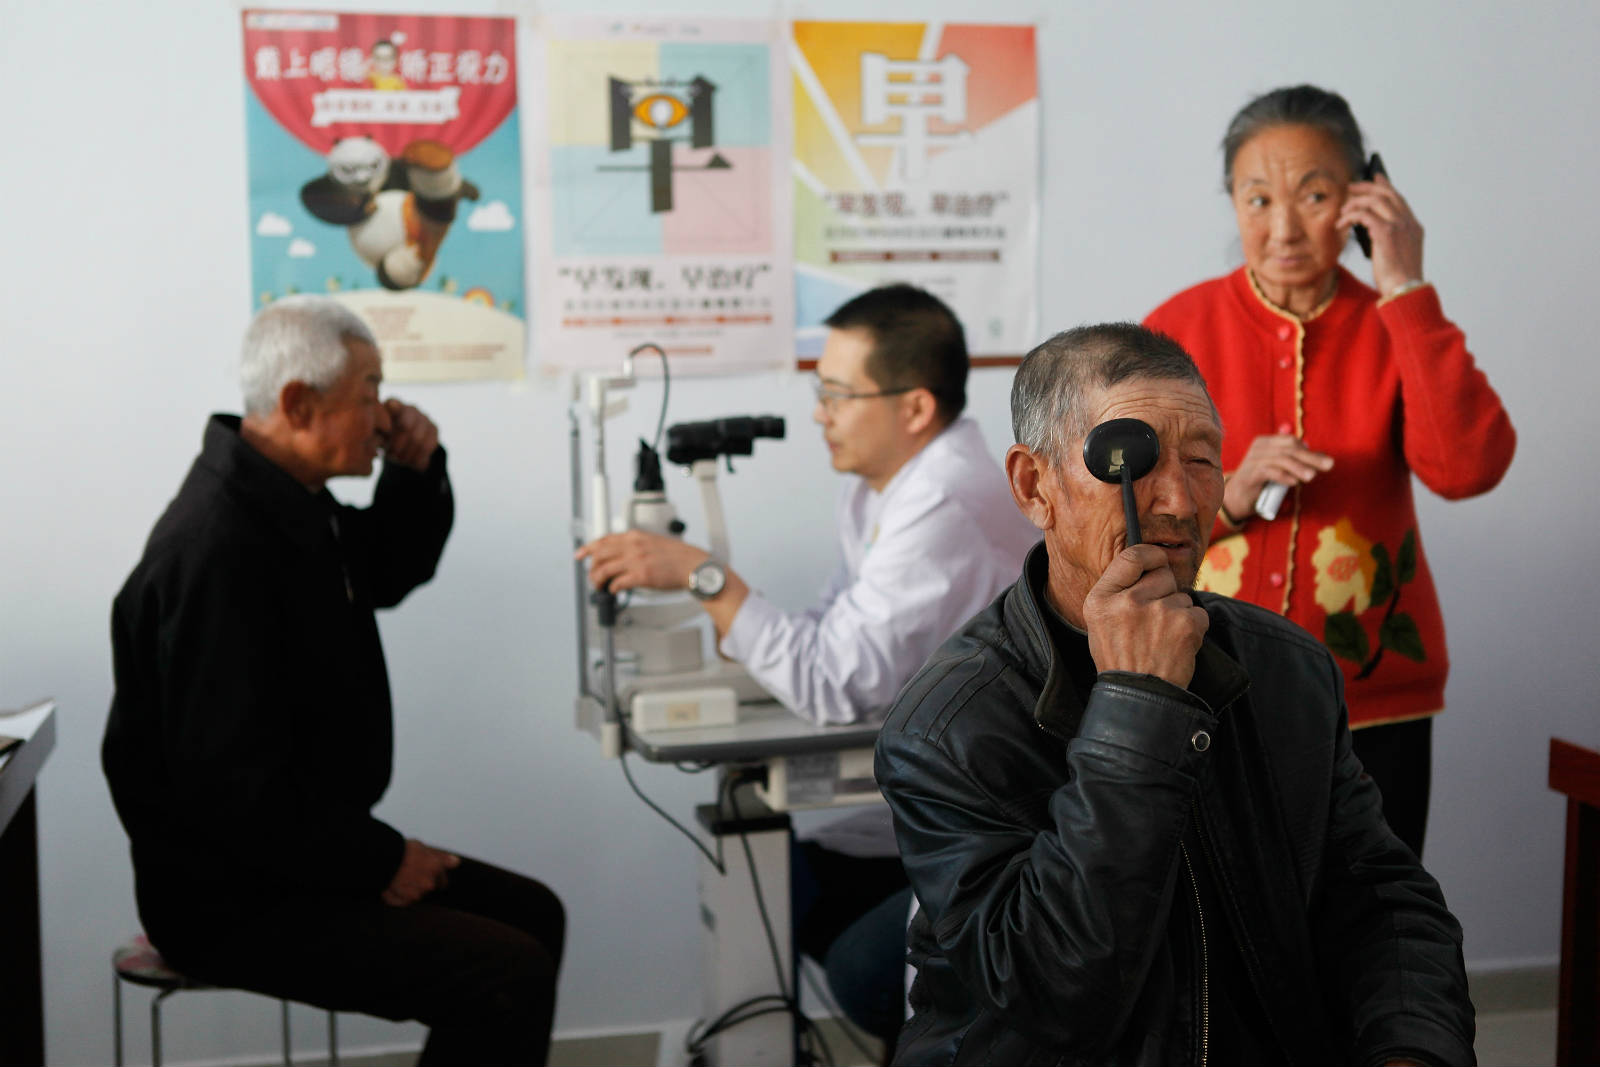 醫療團隊每次到達五良太鄉，都會為 30、40 個居民、主要是長者進行眼科檢查。